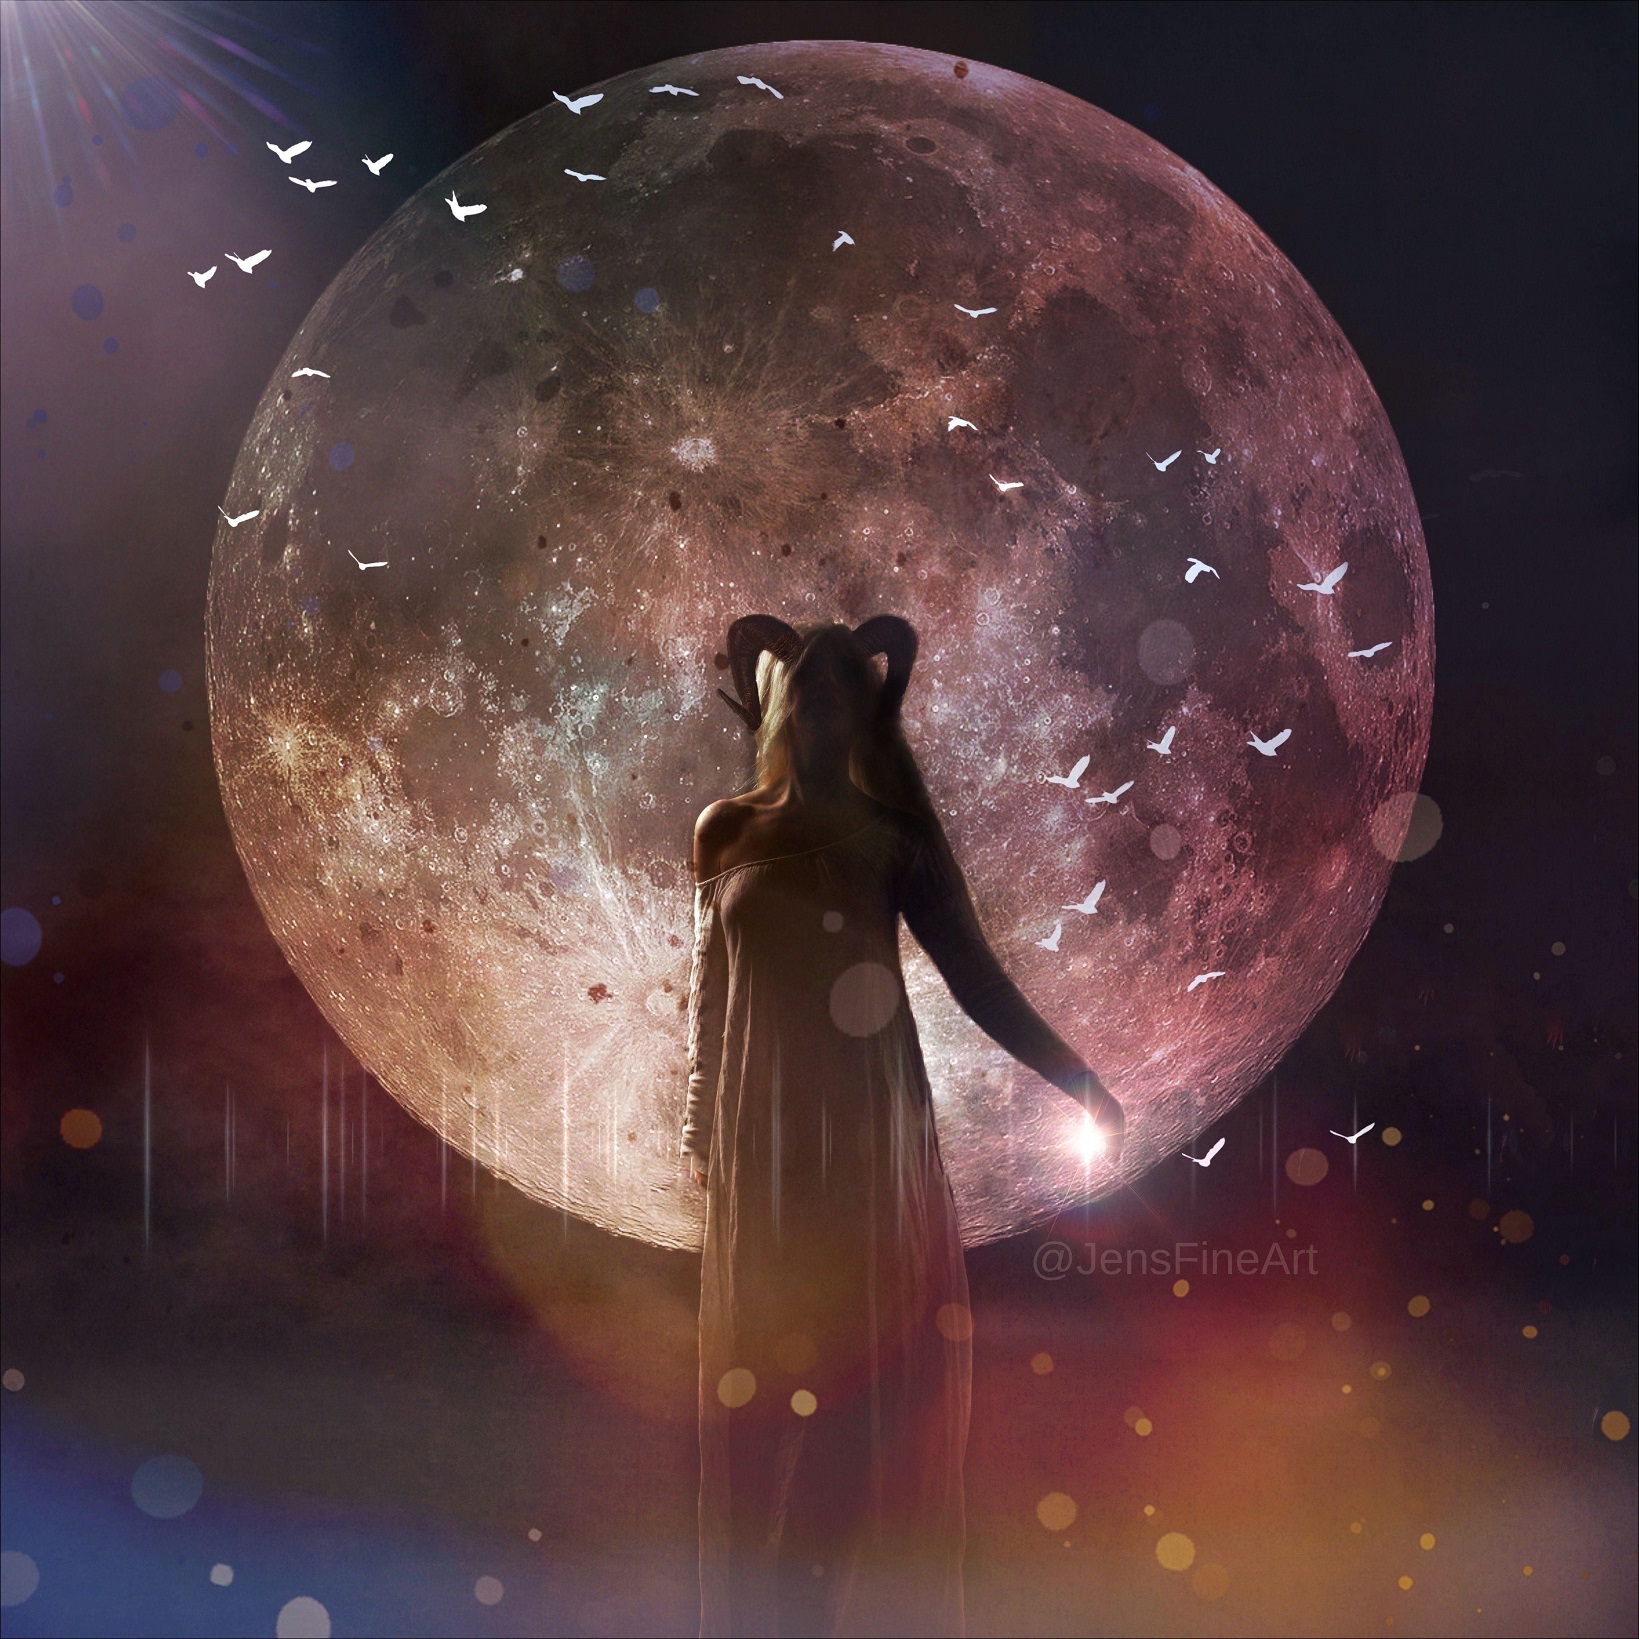 pleine lune en capricorne - femme avec des cornes de capricorne devant une image de lune pleine